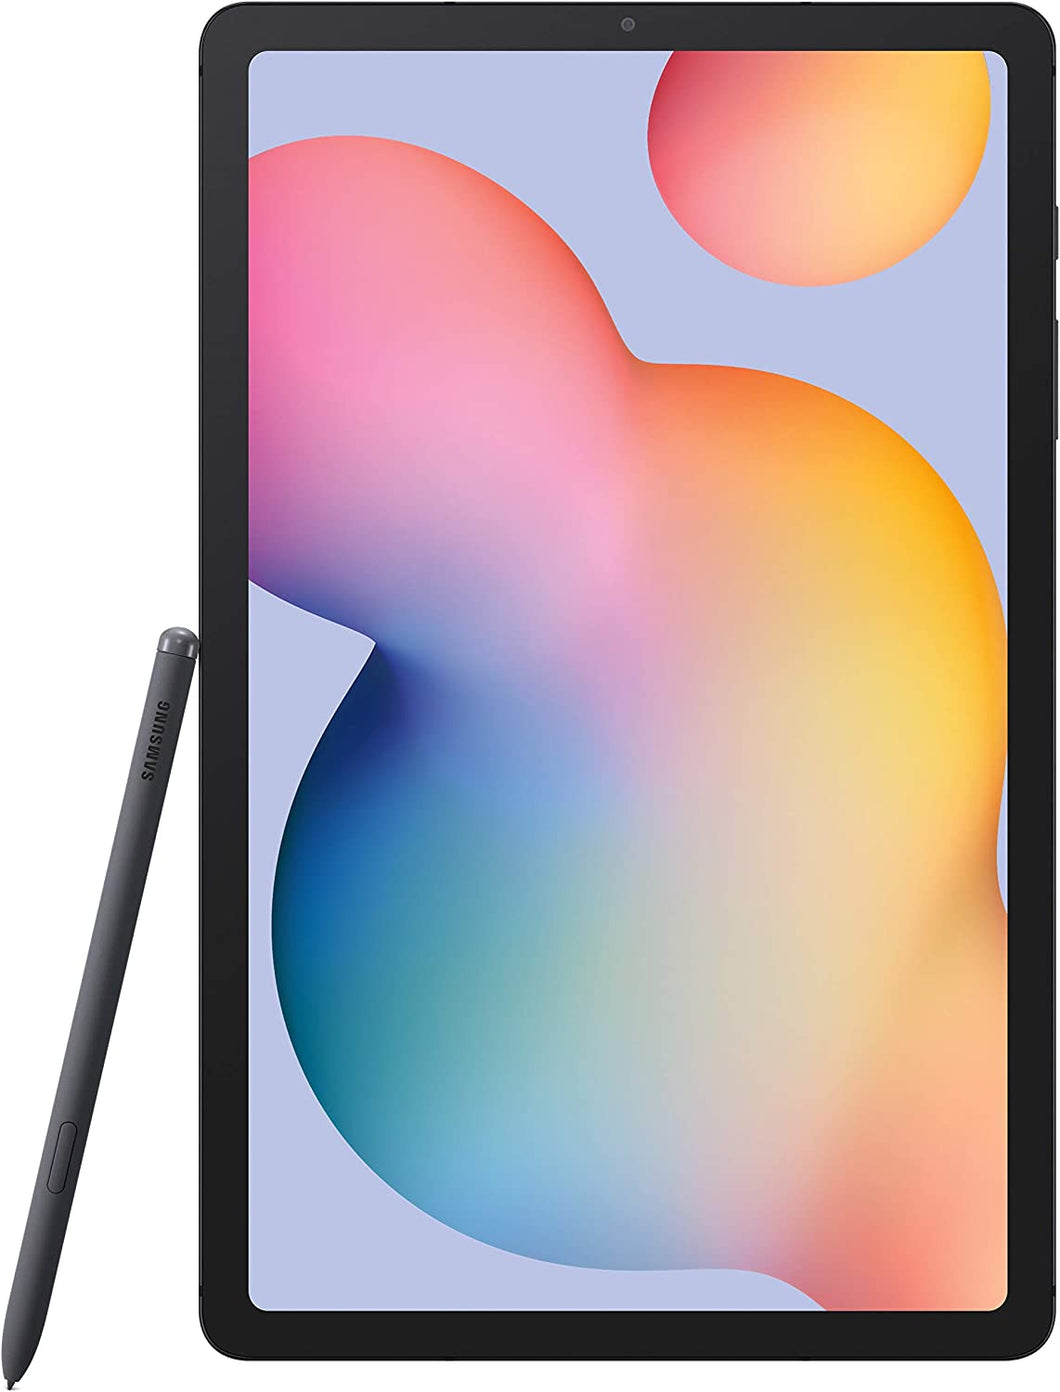 Galaxy Tab S6 (2019) 128GB - Gray - (Wi-Fi)